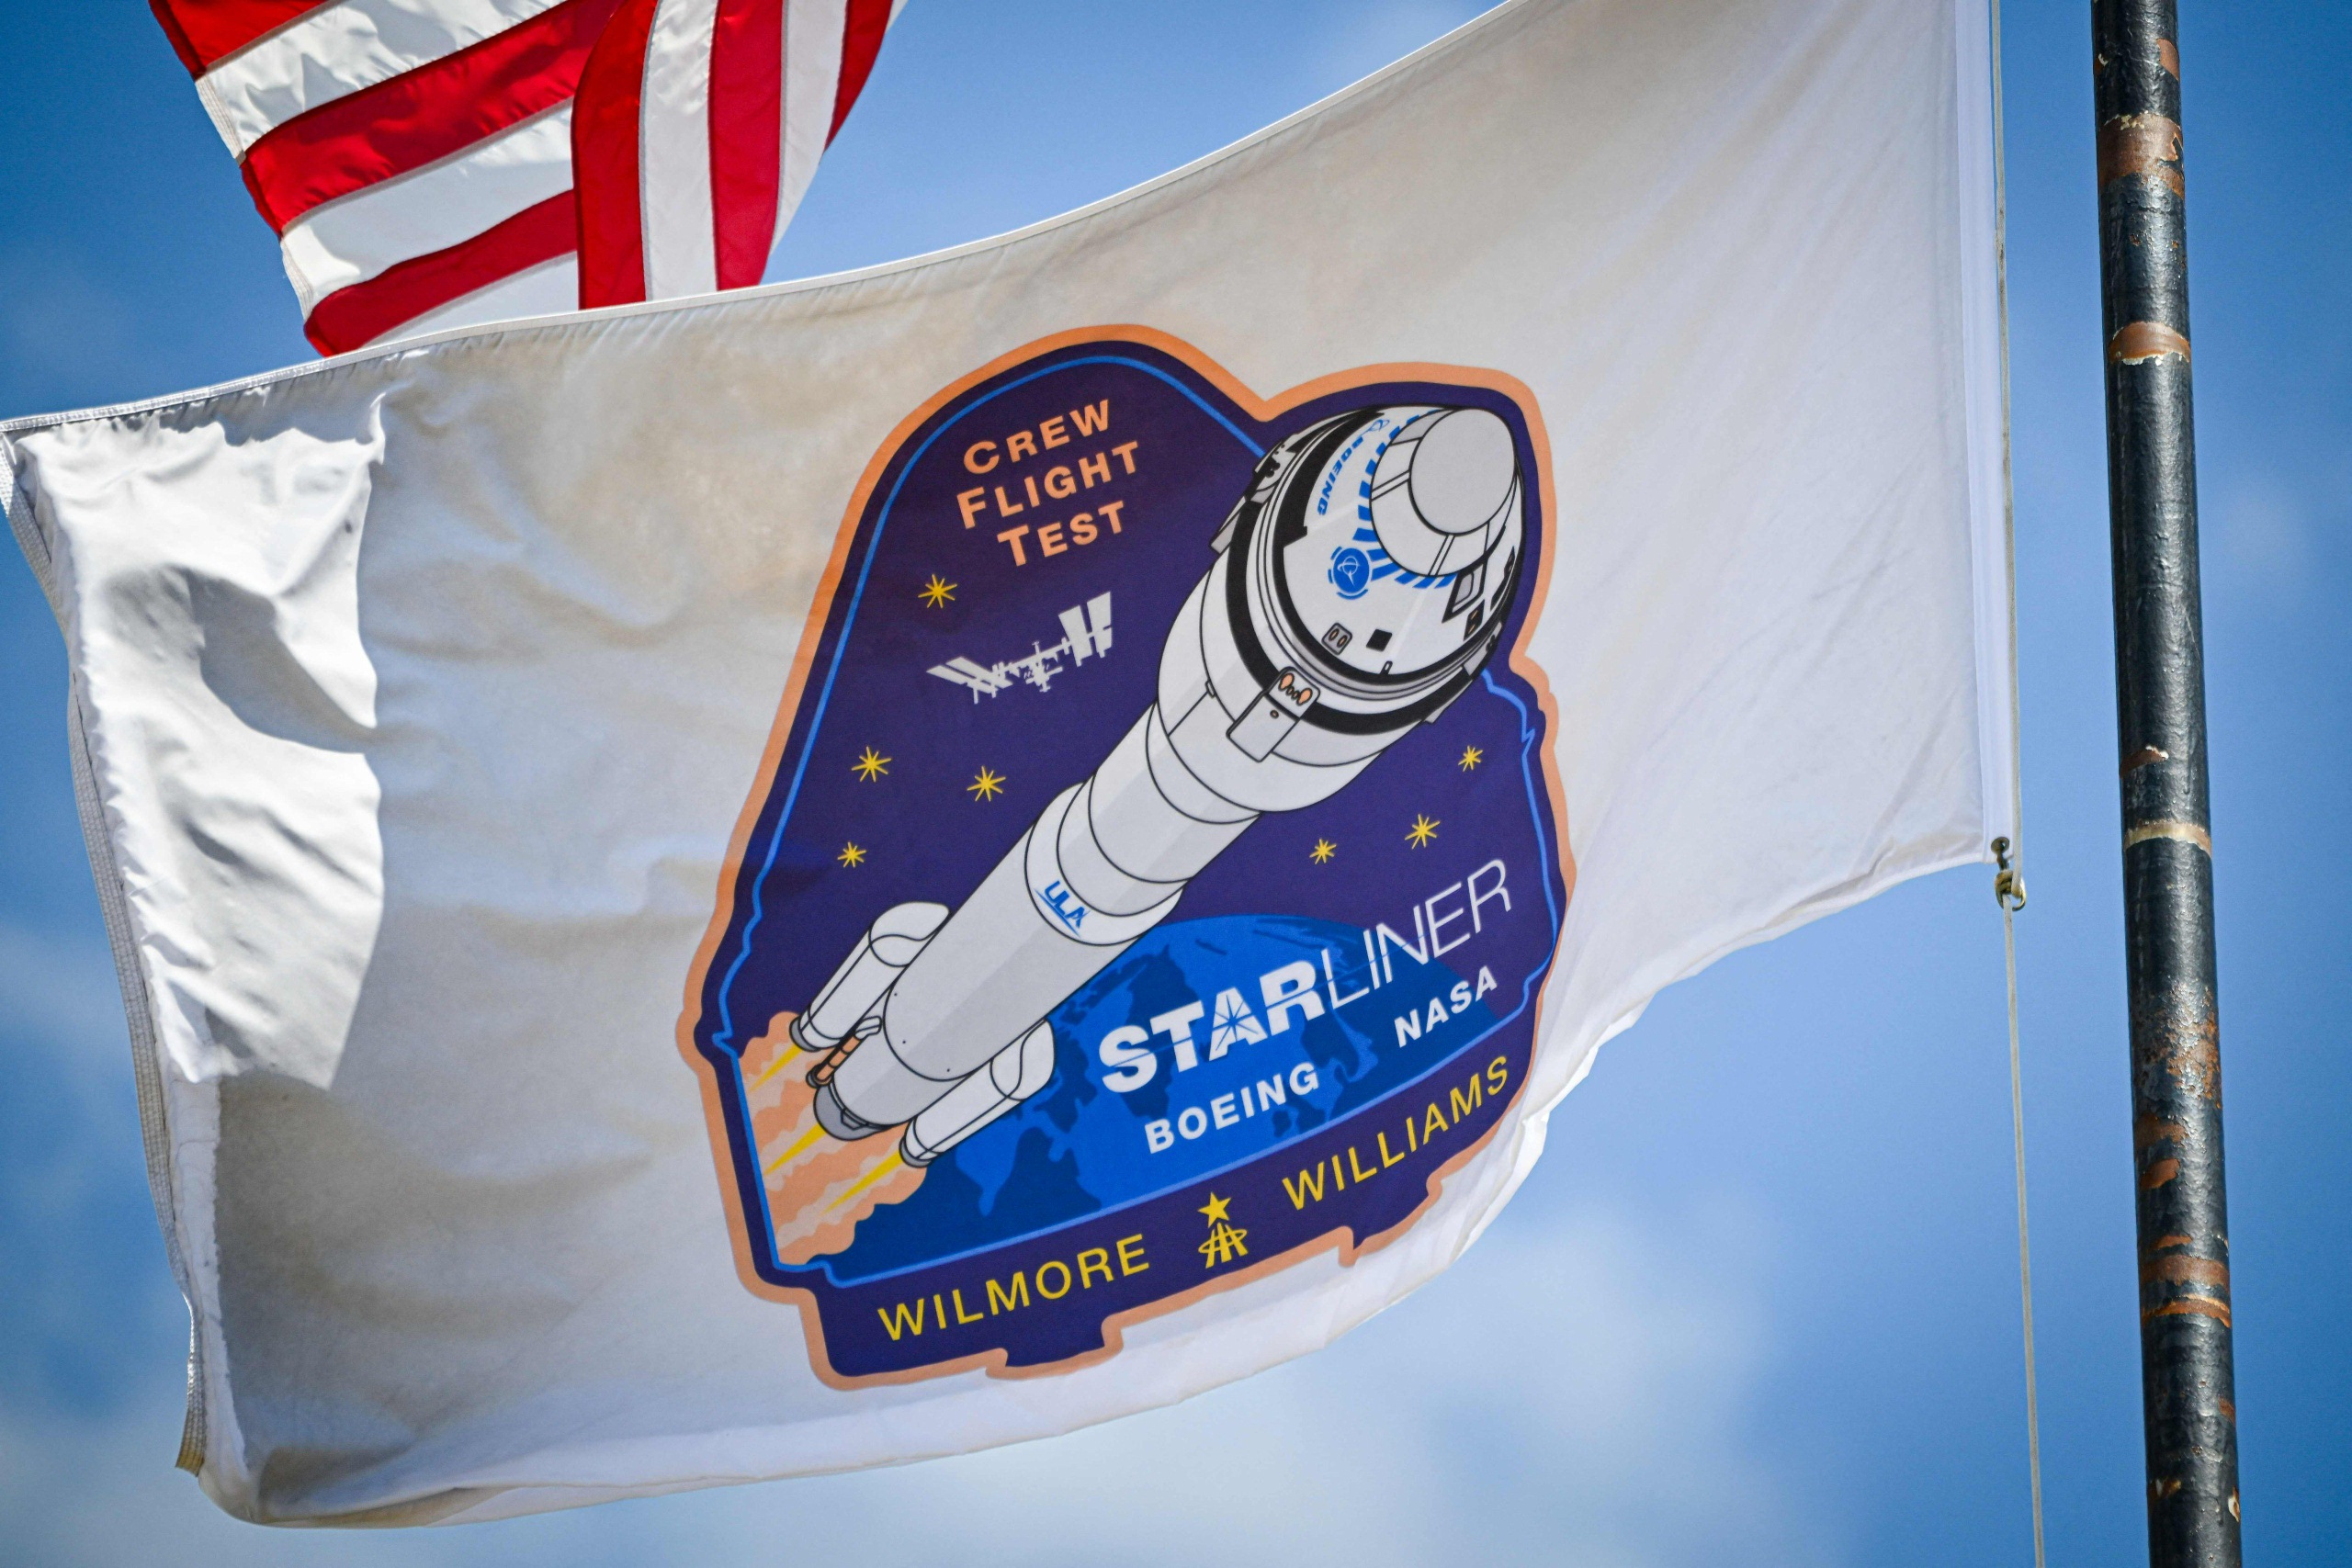 boeingin starliner-avaruusaluksen miehitettyä testilentoa lykättiin vain pari tuntia ennen h-hetkeä turvallisuusongelman vuoksi